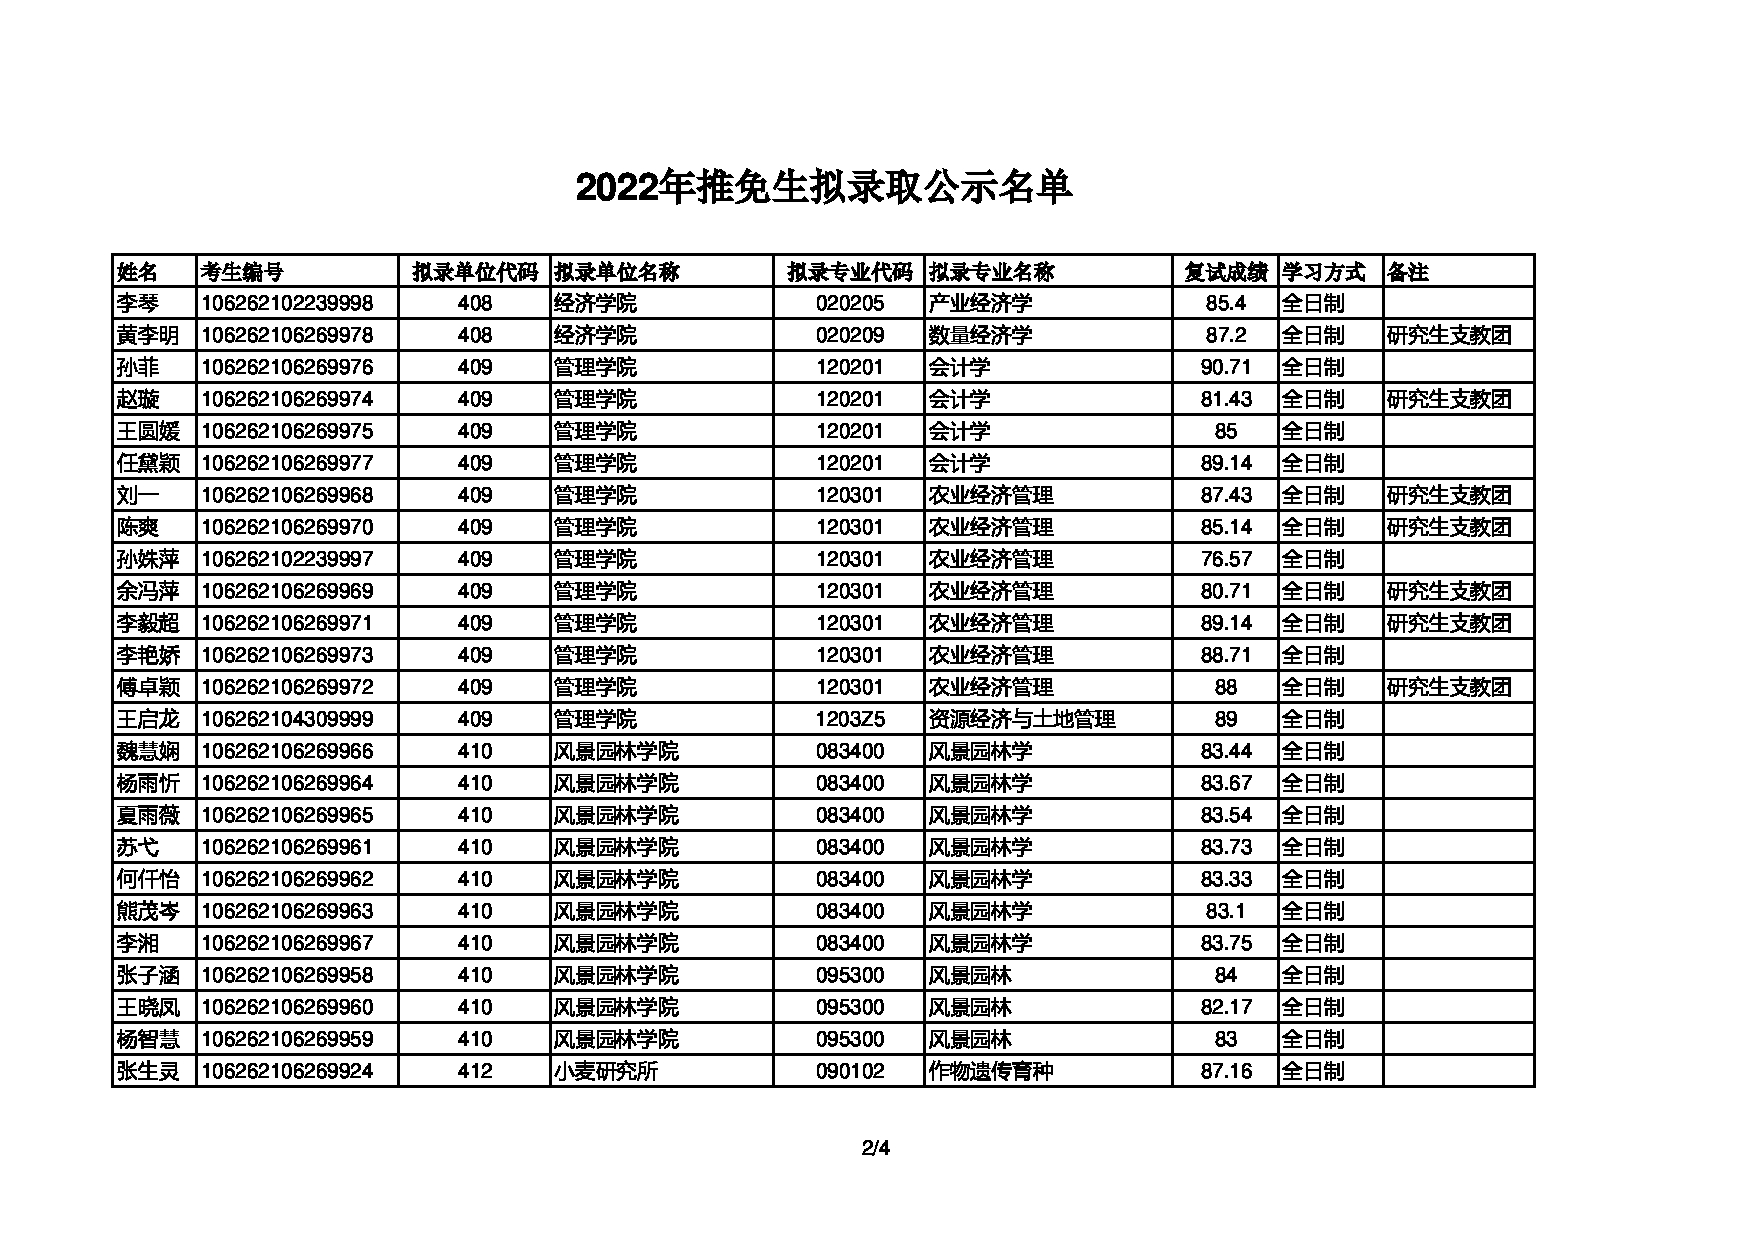 2022考研拟录取名单：四川农业大学2022年推免生拟录取名单第2页